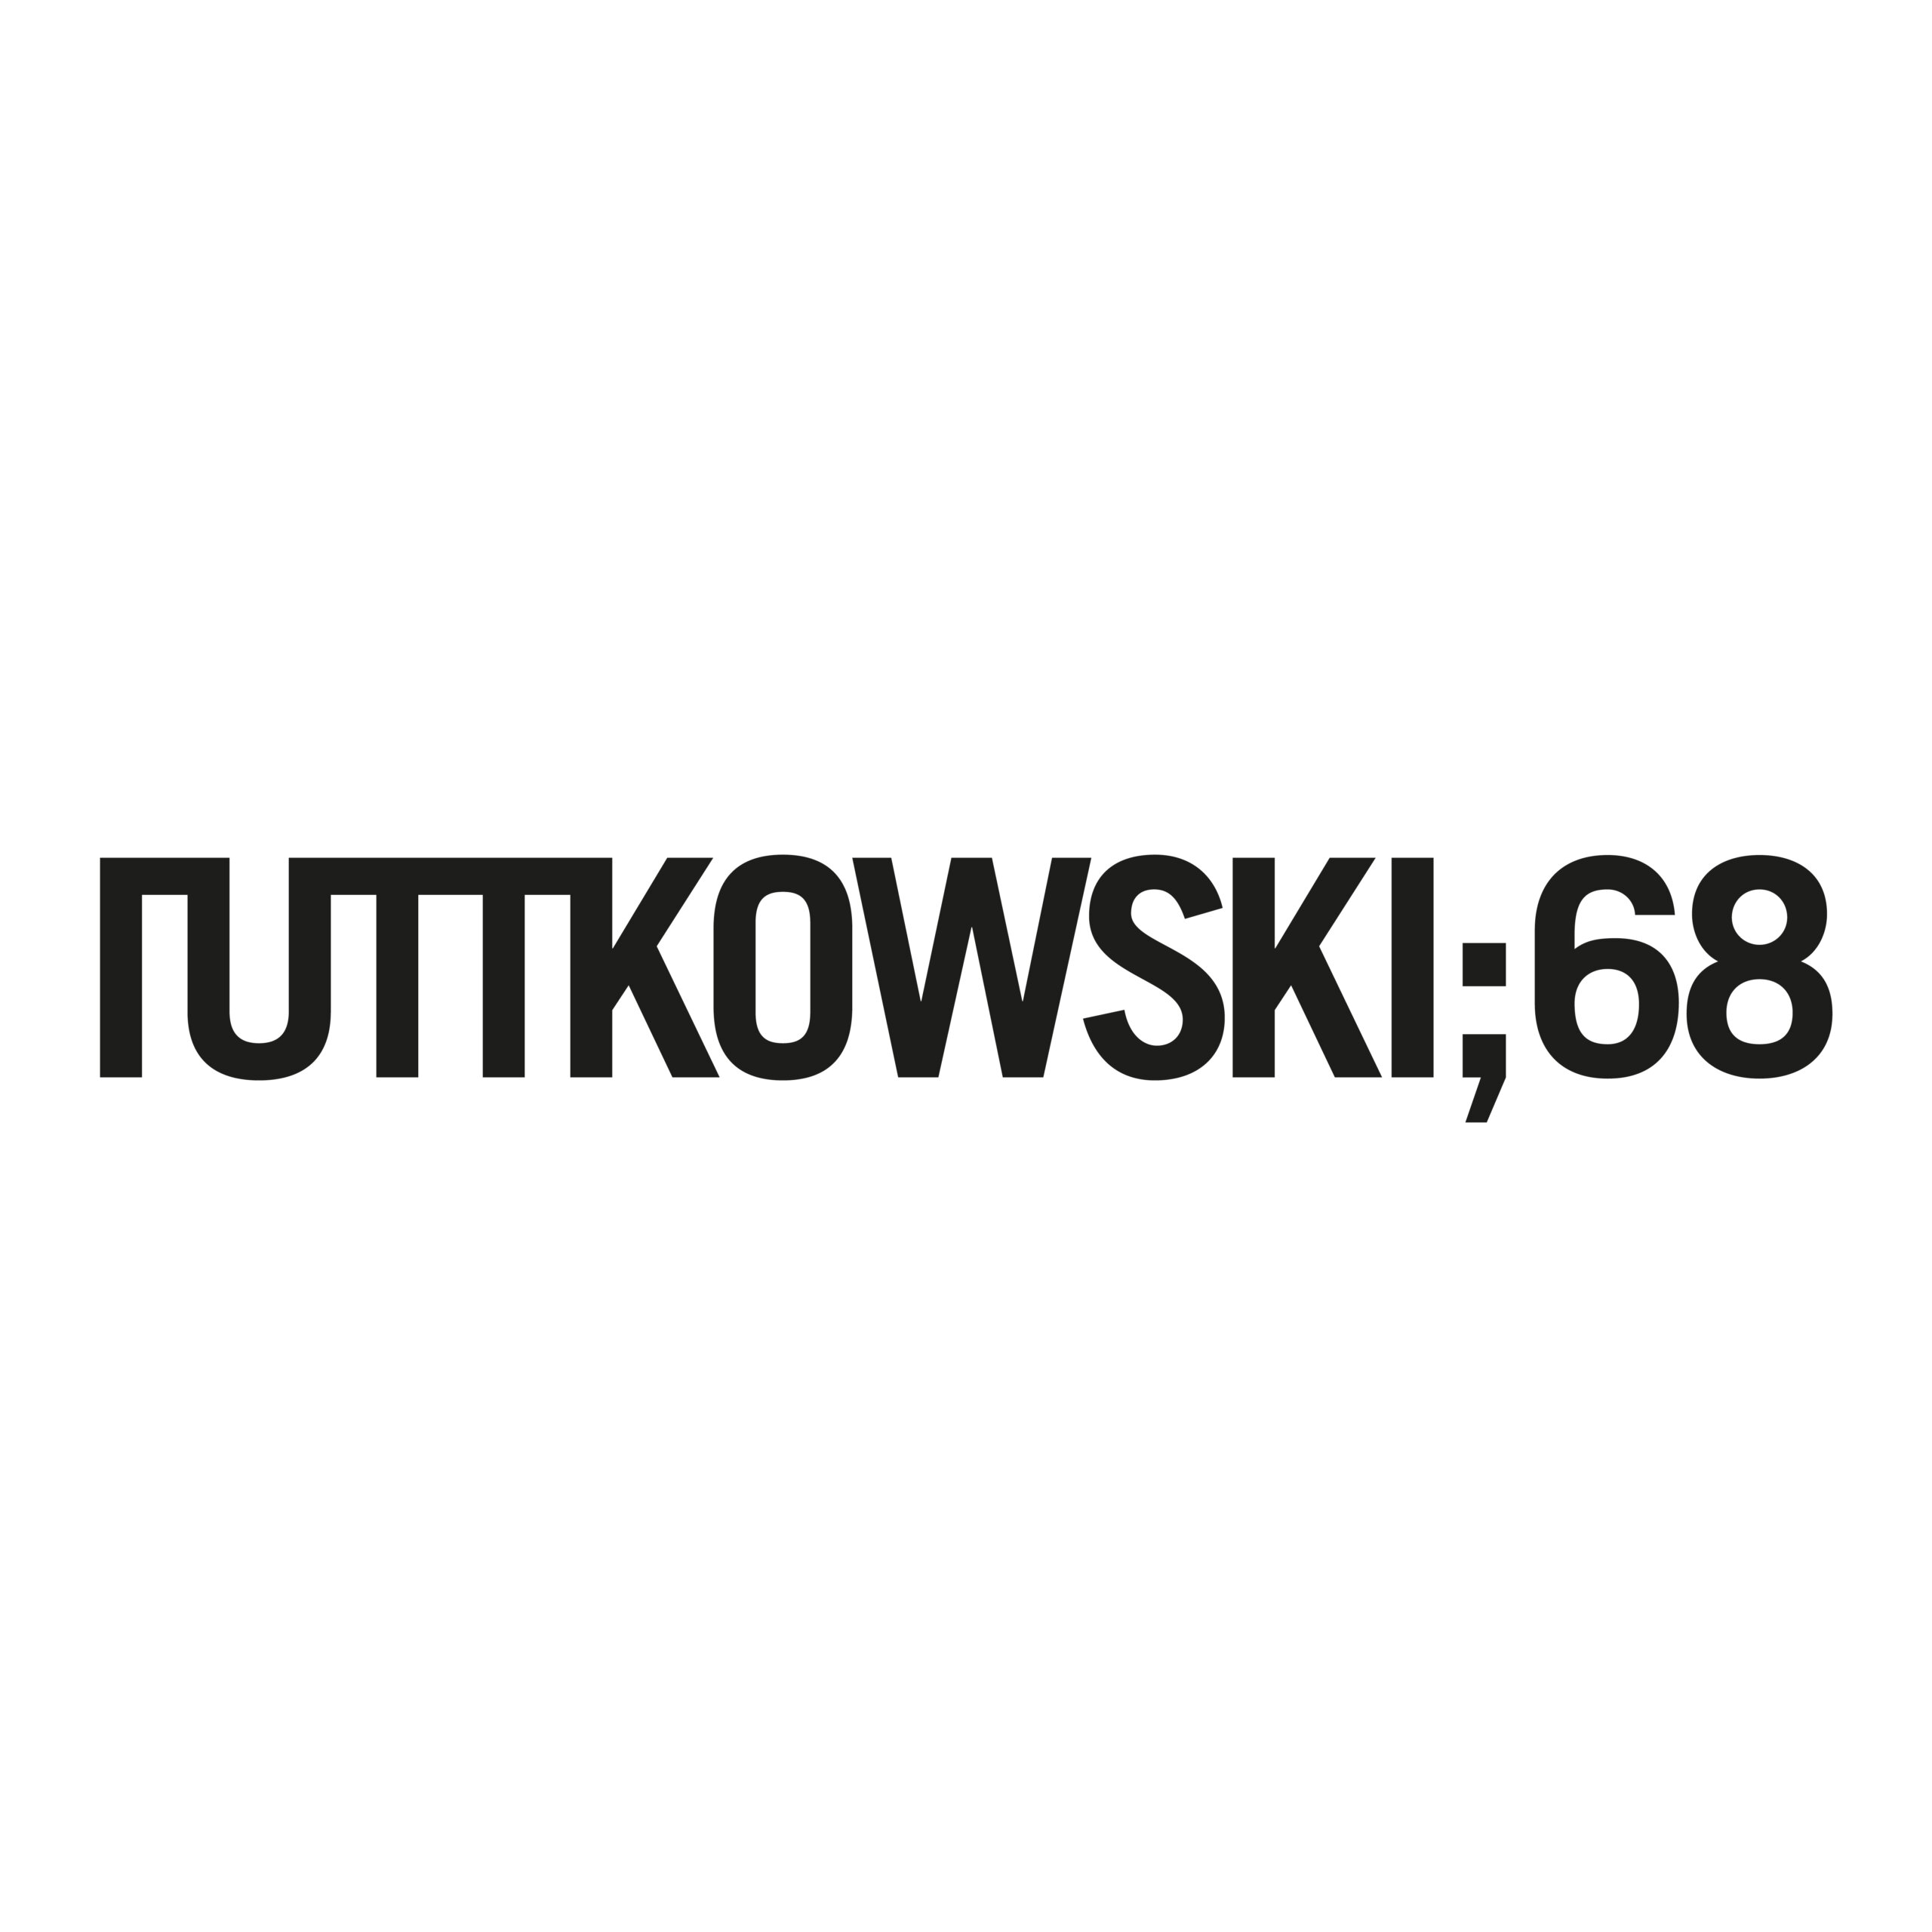 Logo_Ruttkowski68_Quadrat_Schrift-1